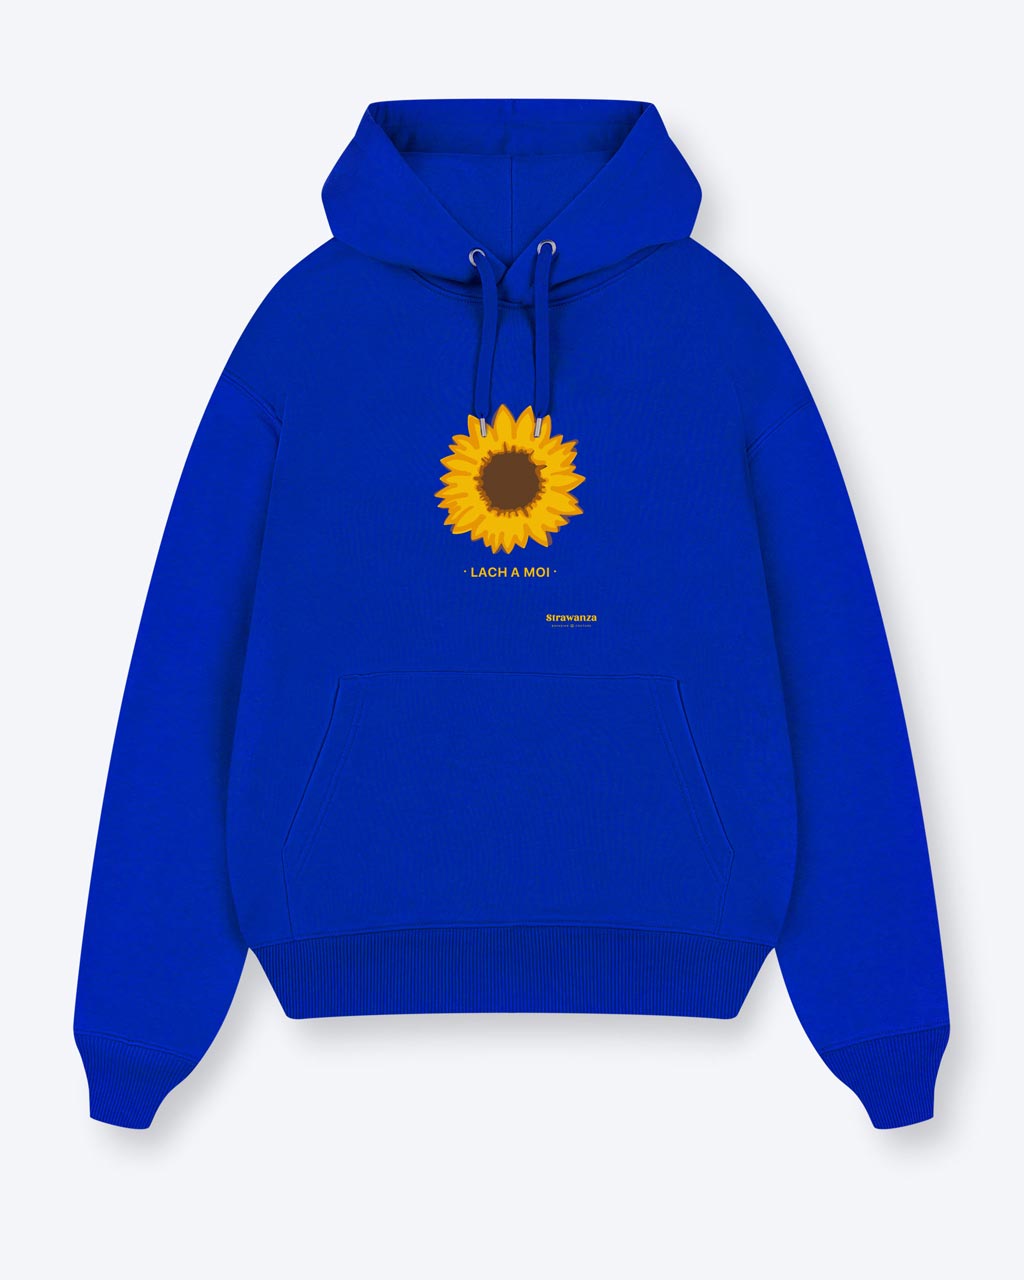 Ein blauer Hoodie mit einer Sonnenblume und einem gelben "LACH A MOI" Schriftzug auf der Brust. 